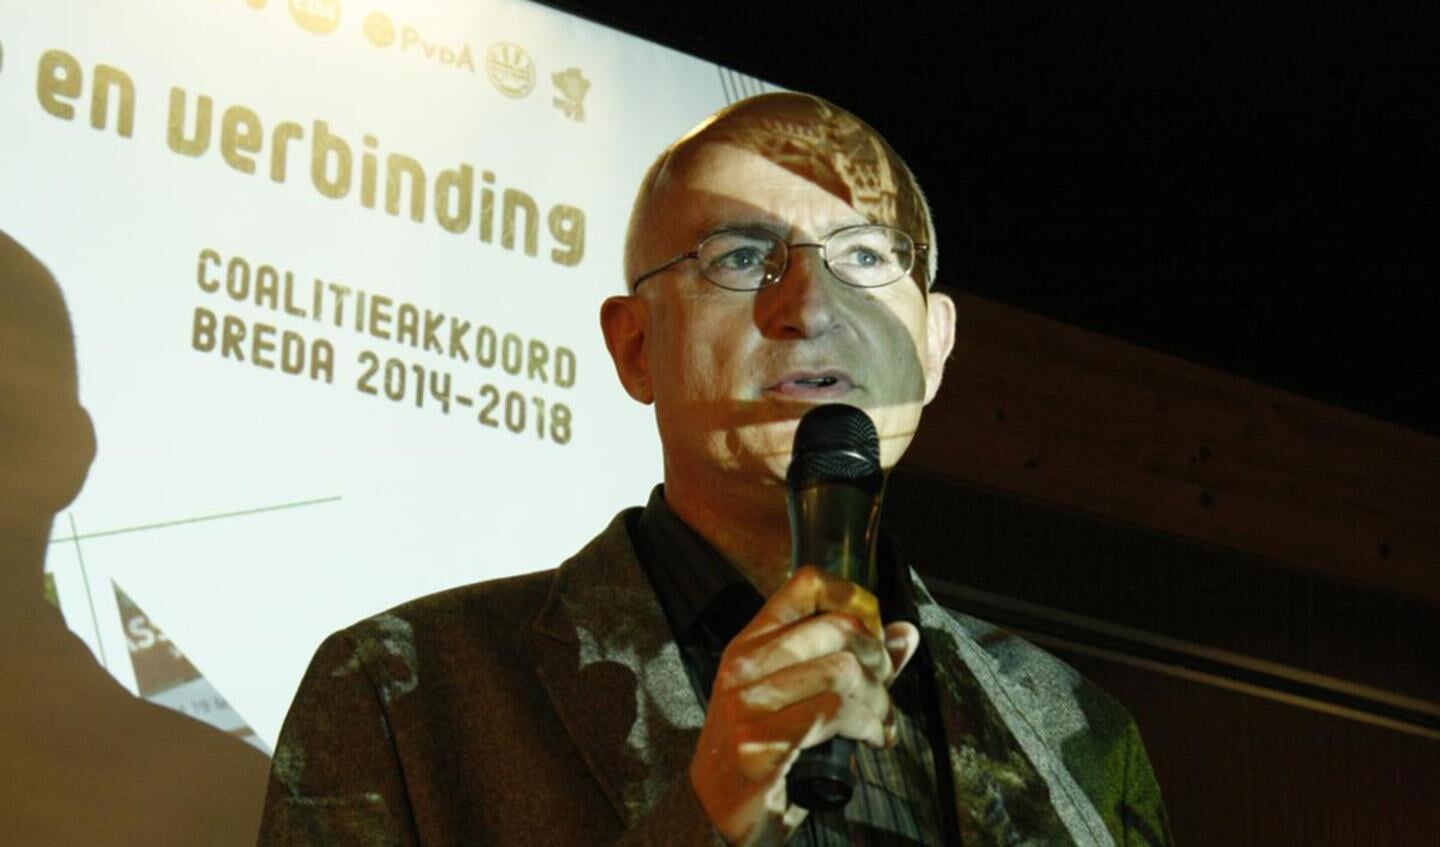 Formateur Eric Smaling bij de presentatie coalitieakkoord 2014-2018 bij ONS buurthuis. foto Wijnand Nijs